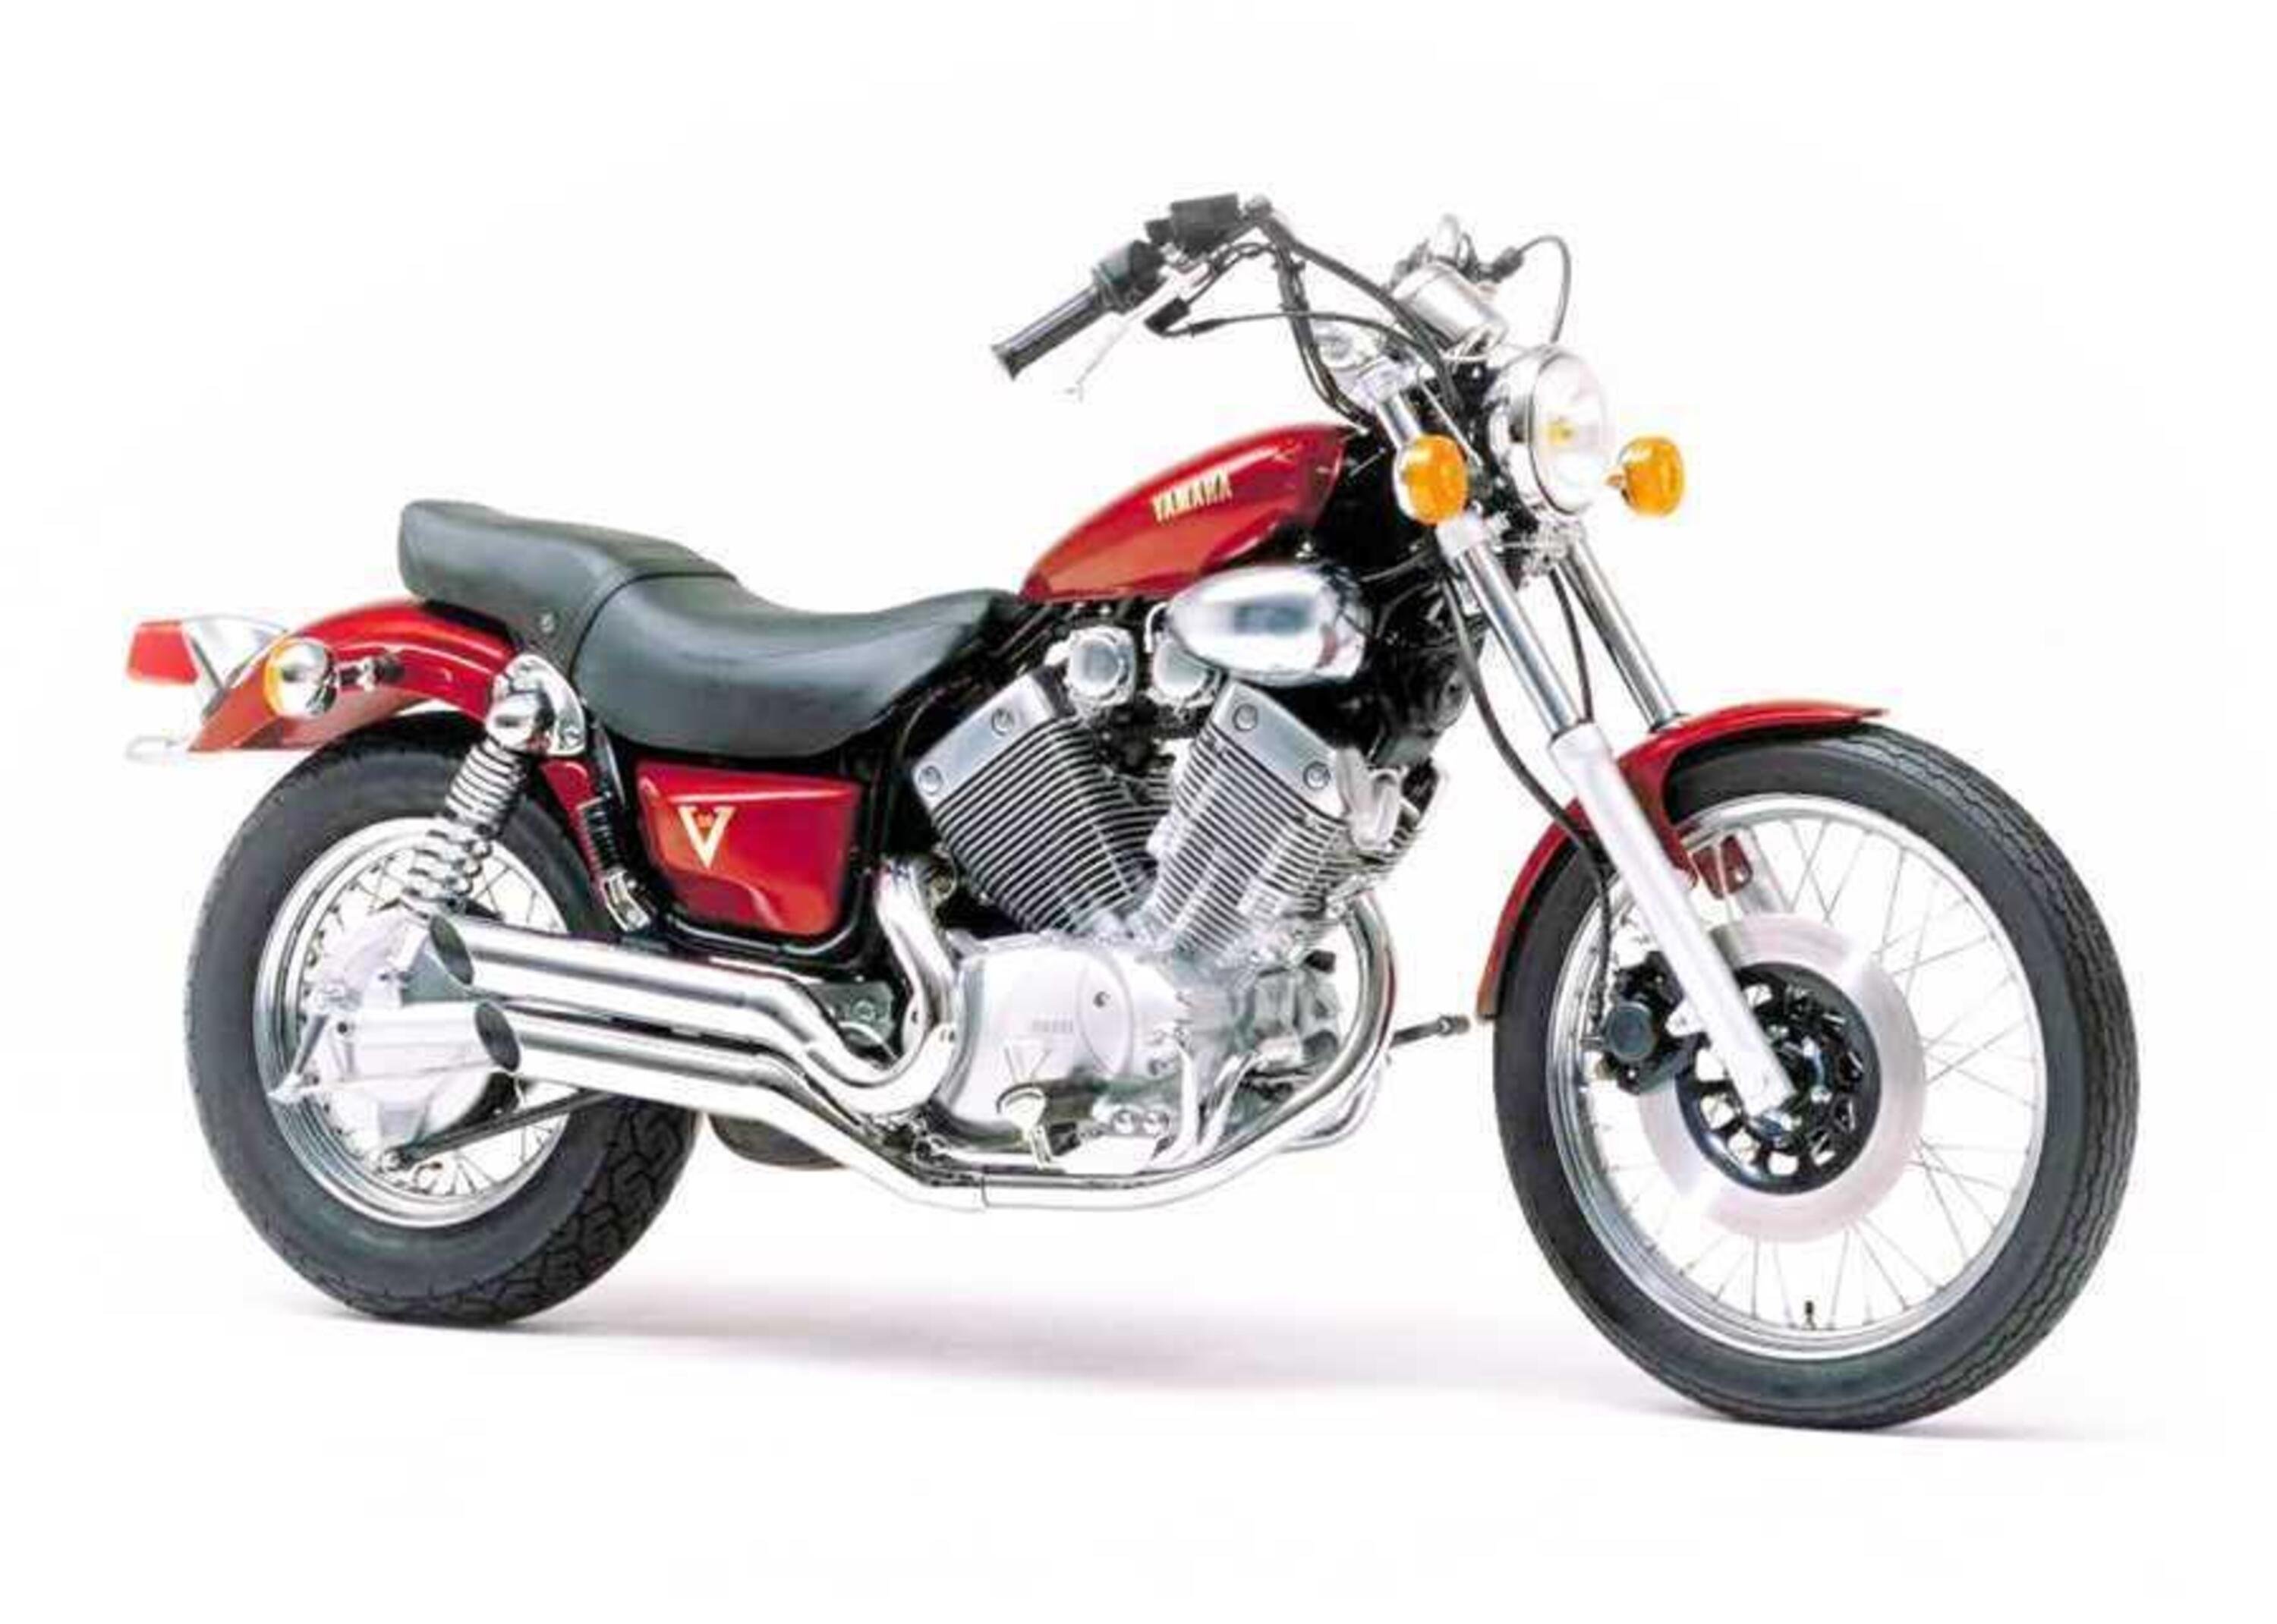 Yamaha XV 535 XV 535 (1988 - 97)